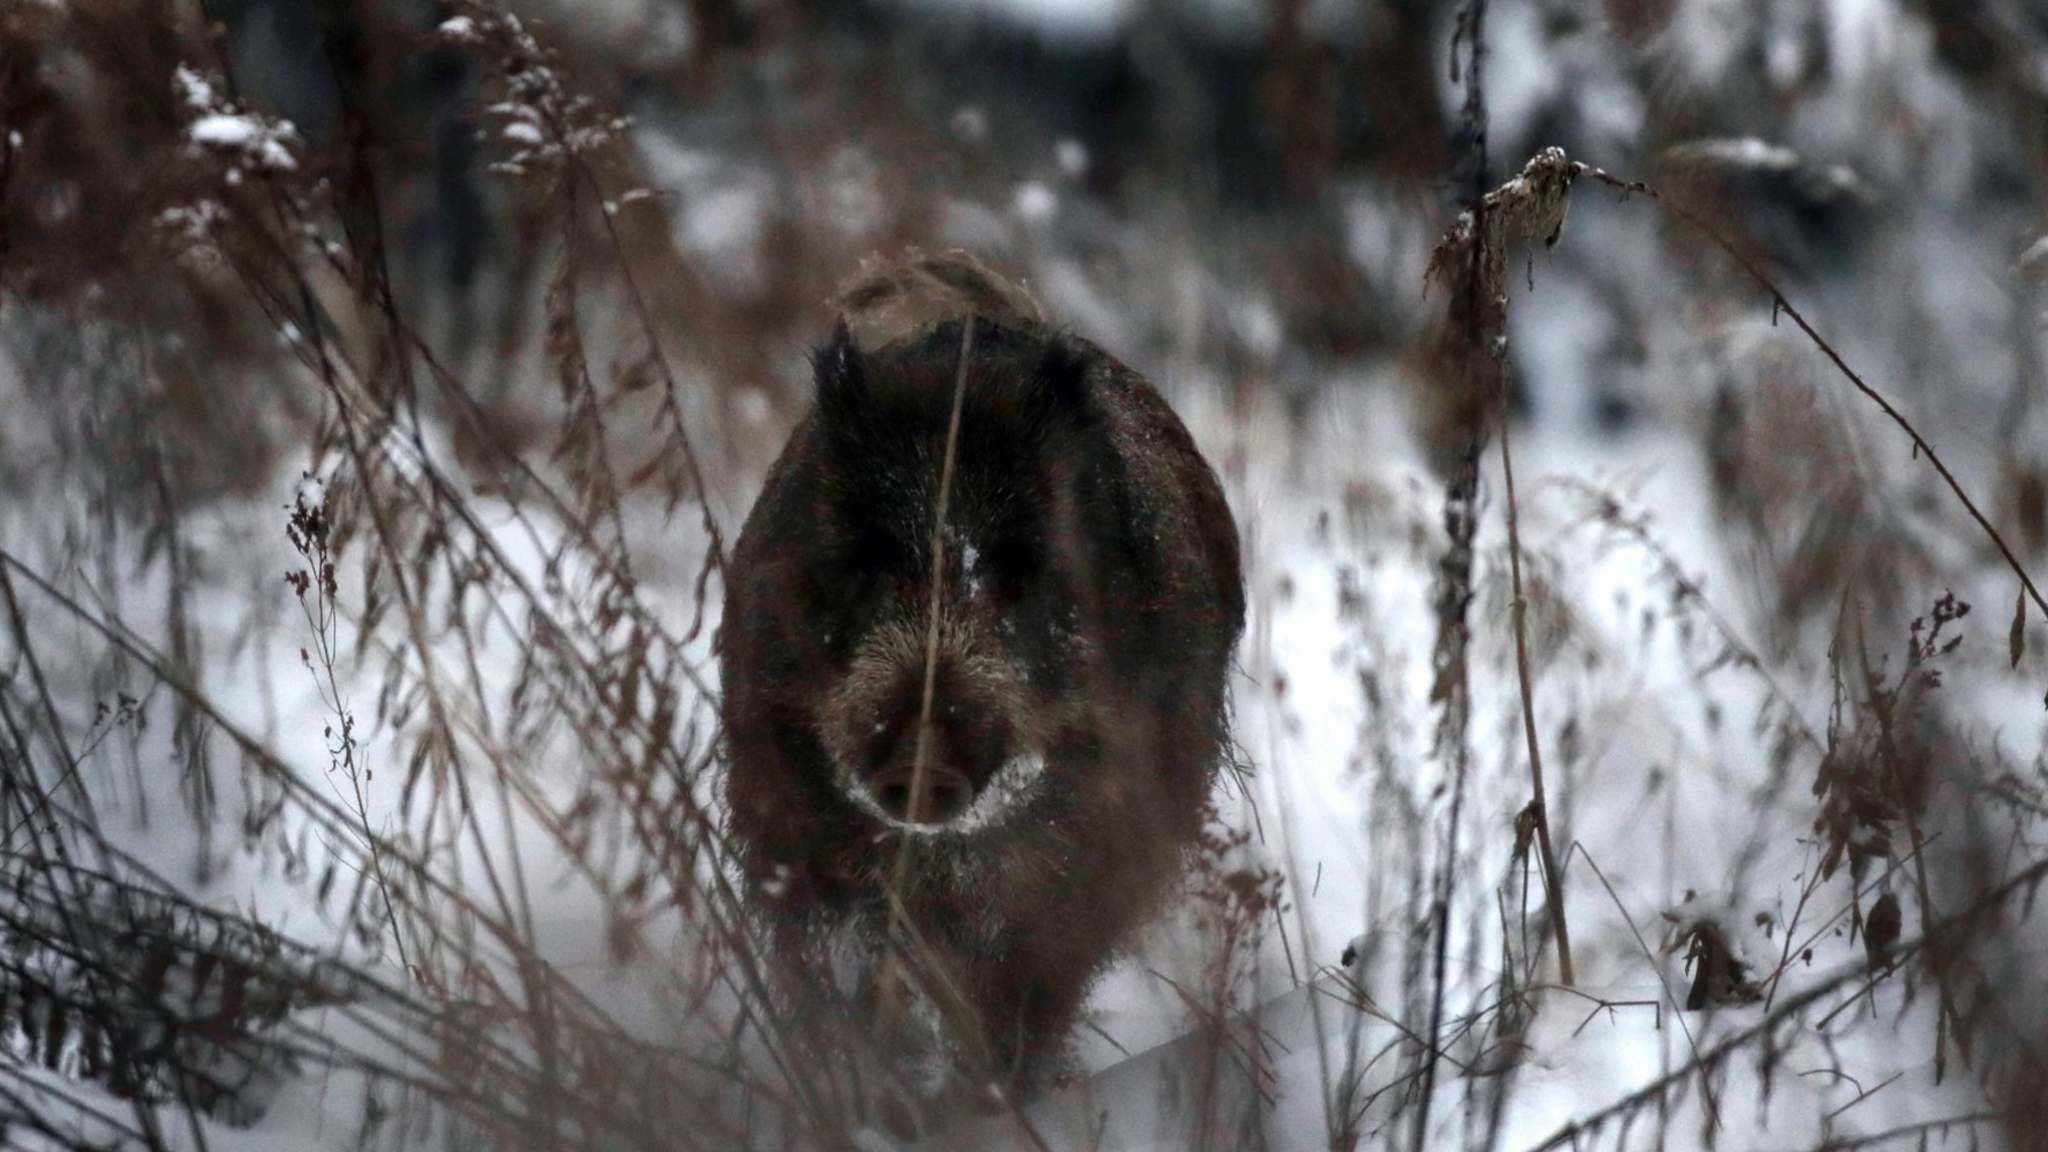  Этот бегущий дикий кабан в шведских лесах был застрелен охотниками. Уровень радиации, превышающий безопасный в 10 раз, предположительно, был вызван облаком радиоактивной пыли, которая взорвалась после чернобыльской катастрофы 33 года назад, осадив цезий-137 в земле на расстоянии 2000 км